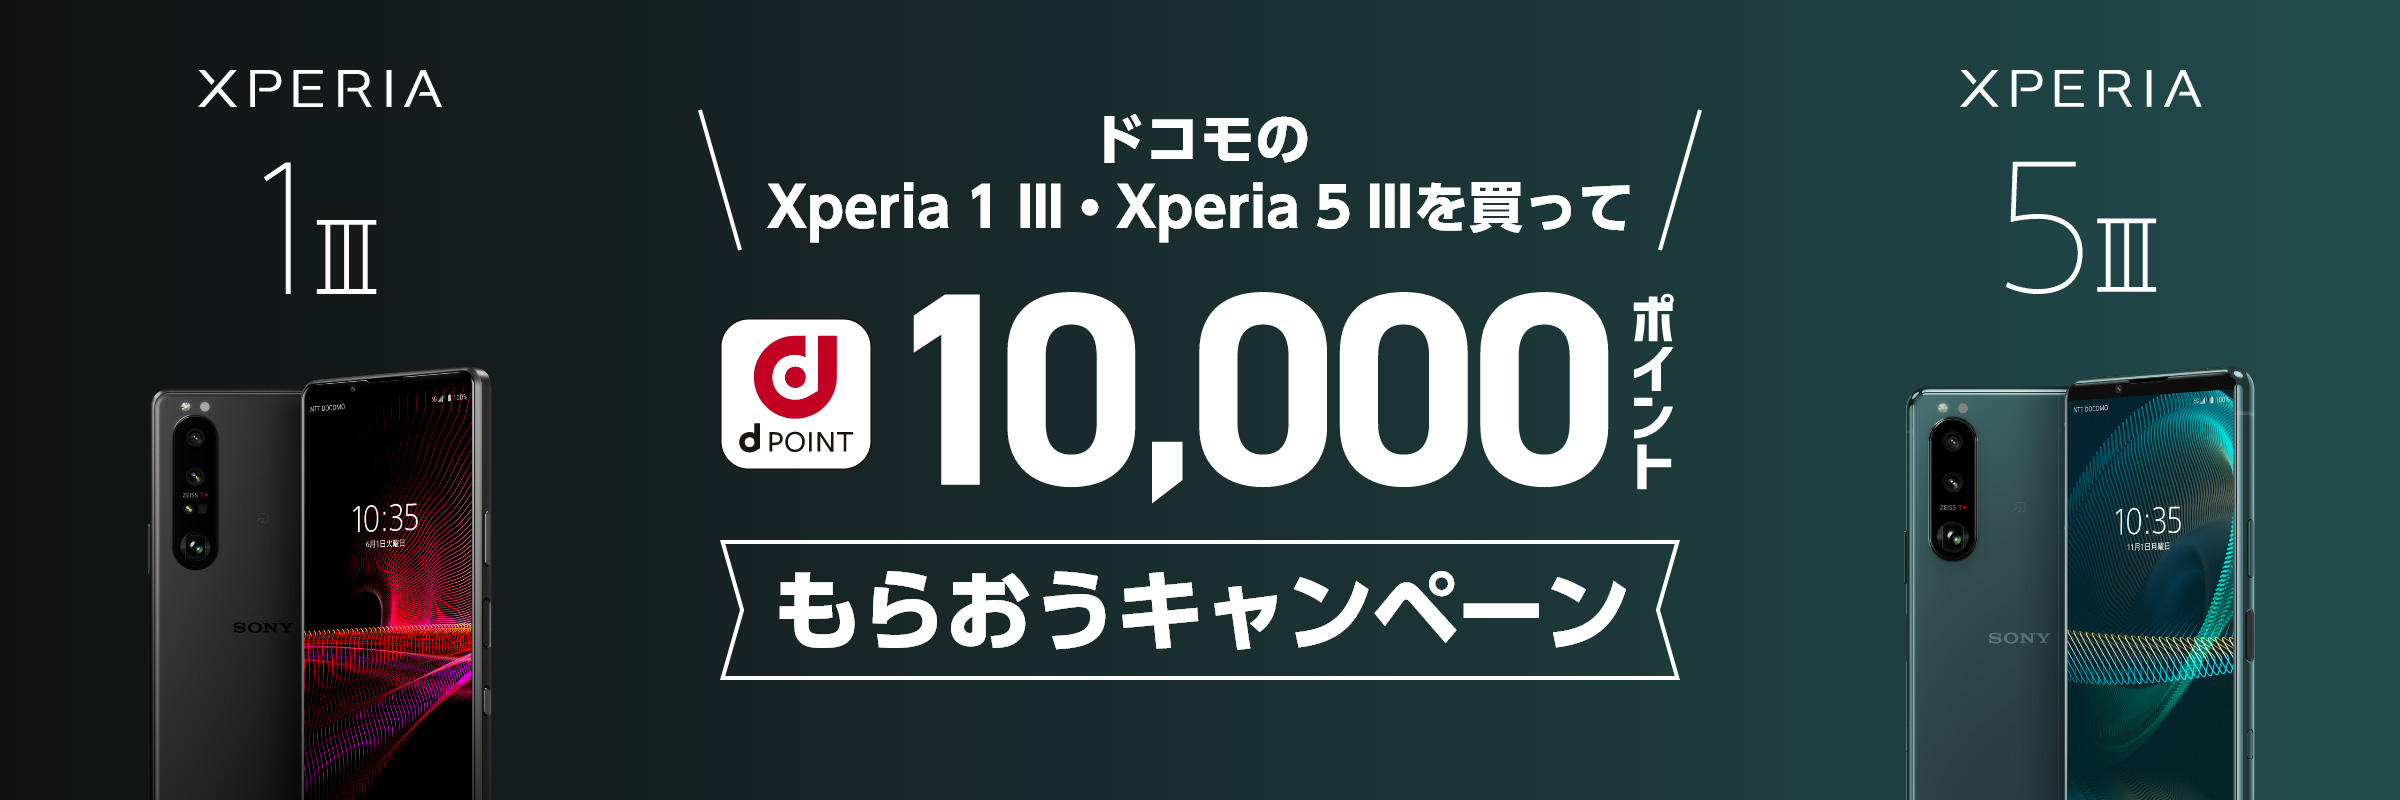 ドコモのXperia 1 III・Xperia 5 IIIを買って10,000ポイントもらおうキャンペーン